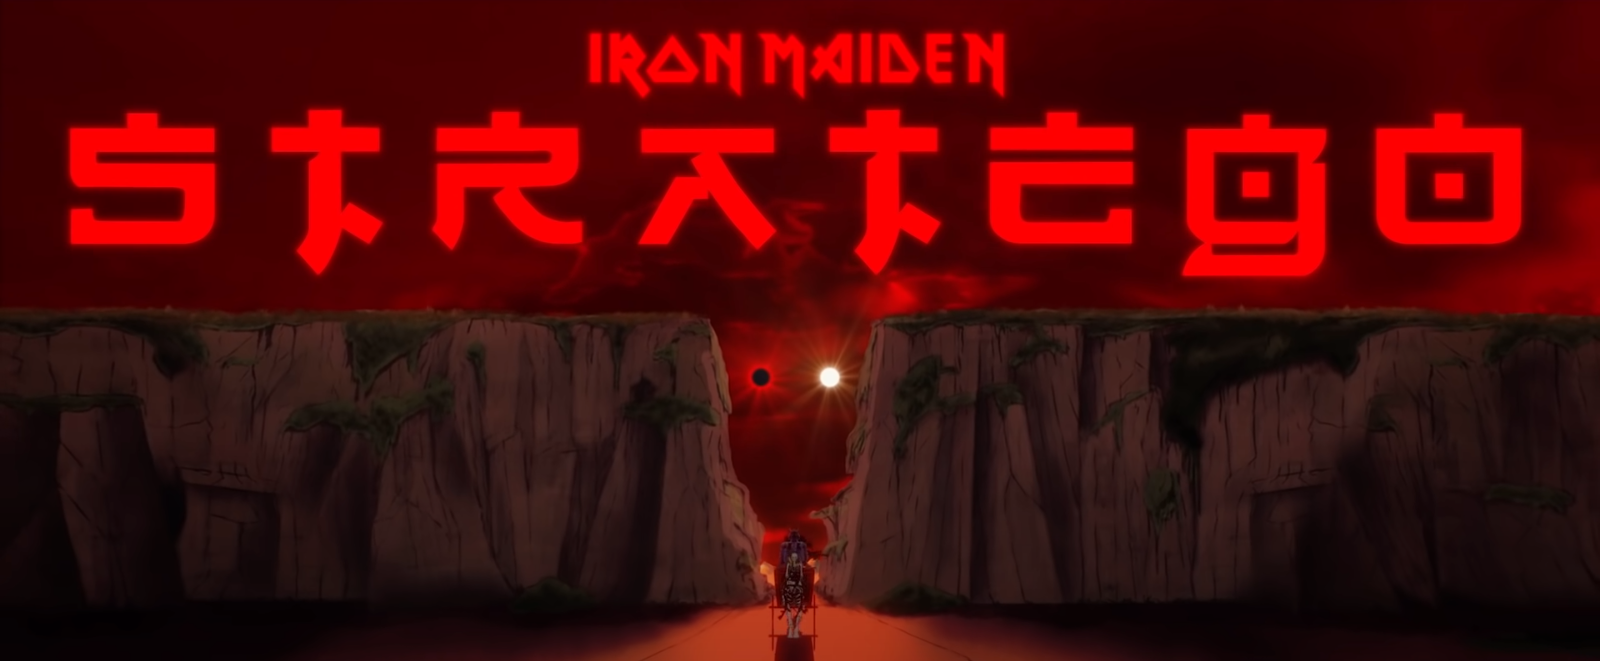 Iron Maiden lança clipe oficial para a faixa 'Stratego'